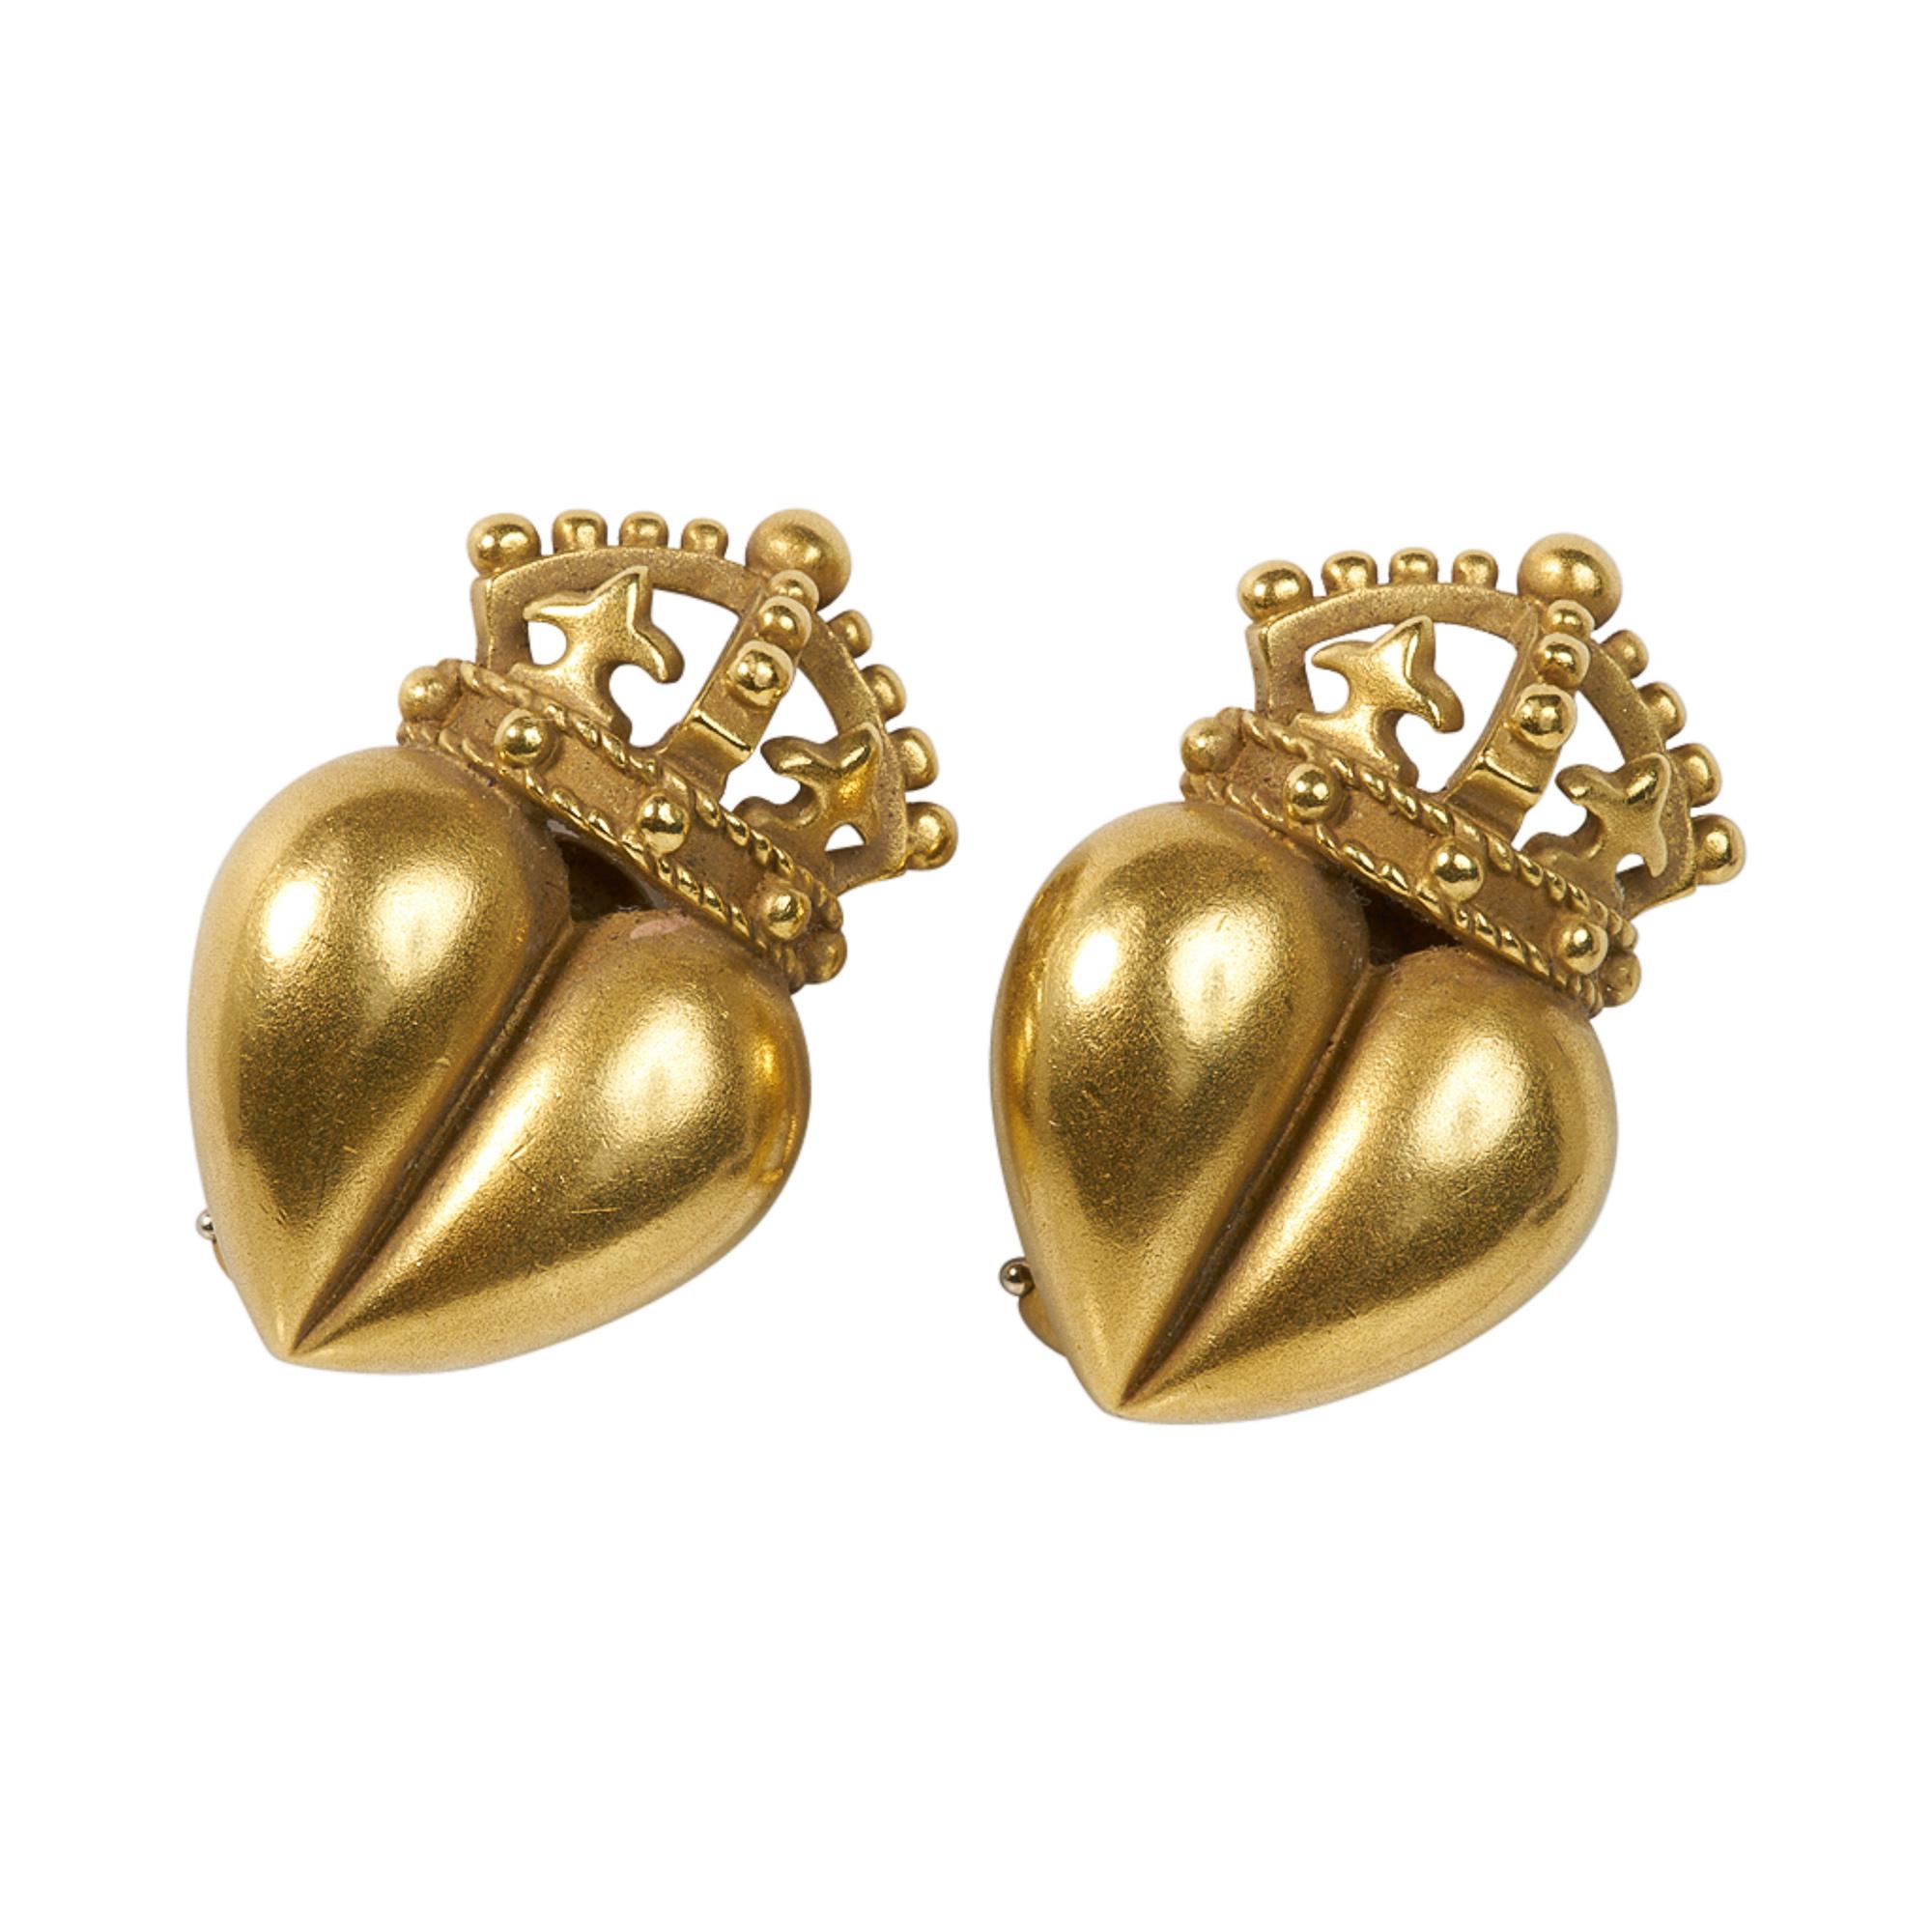 Ikonische KIESELSTEIN-CORD Herzkronen-Ohrringe aus 18 Karat Gold.
Klassisch und mit hohem Wiedererkennungswert.

GRÖSSE
1